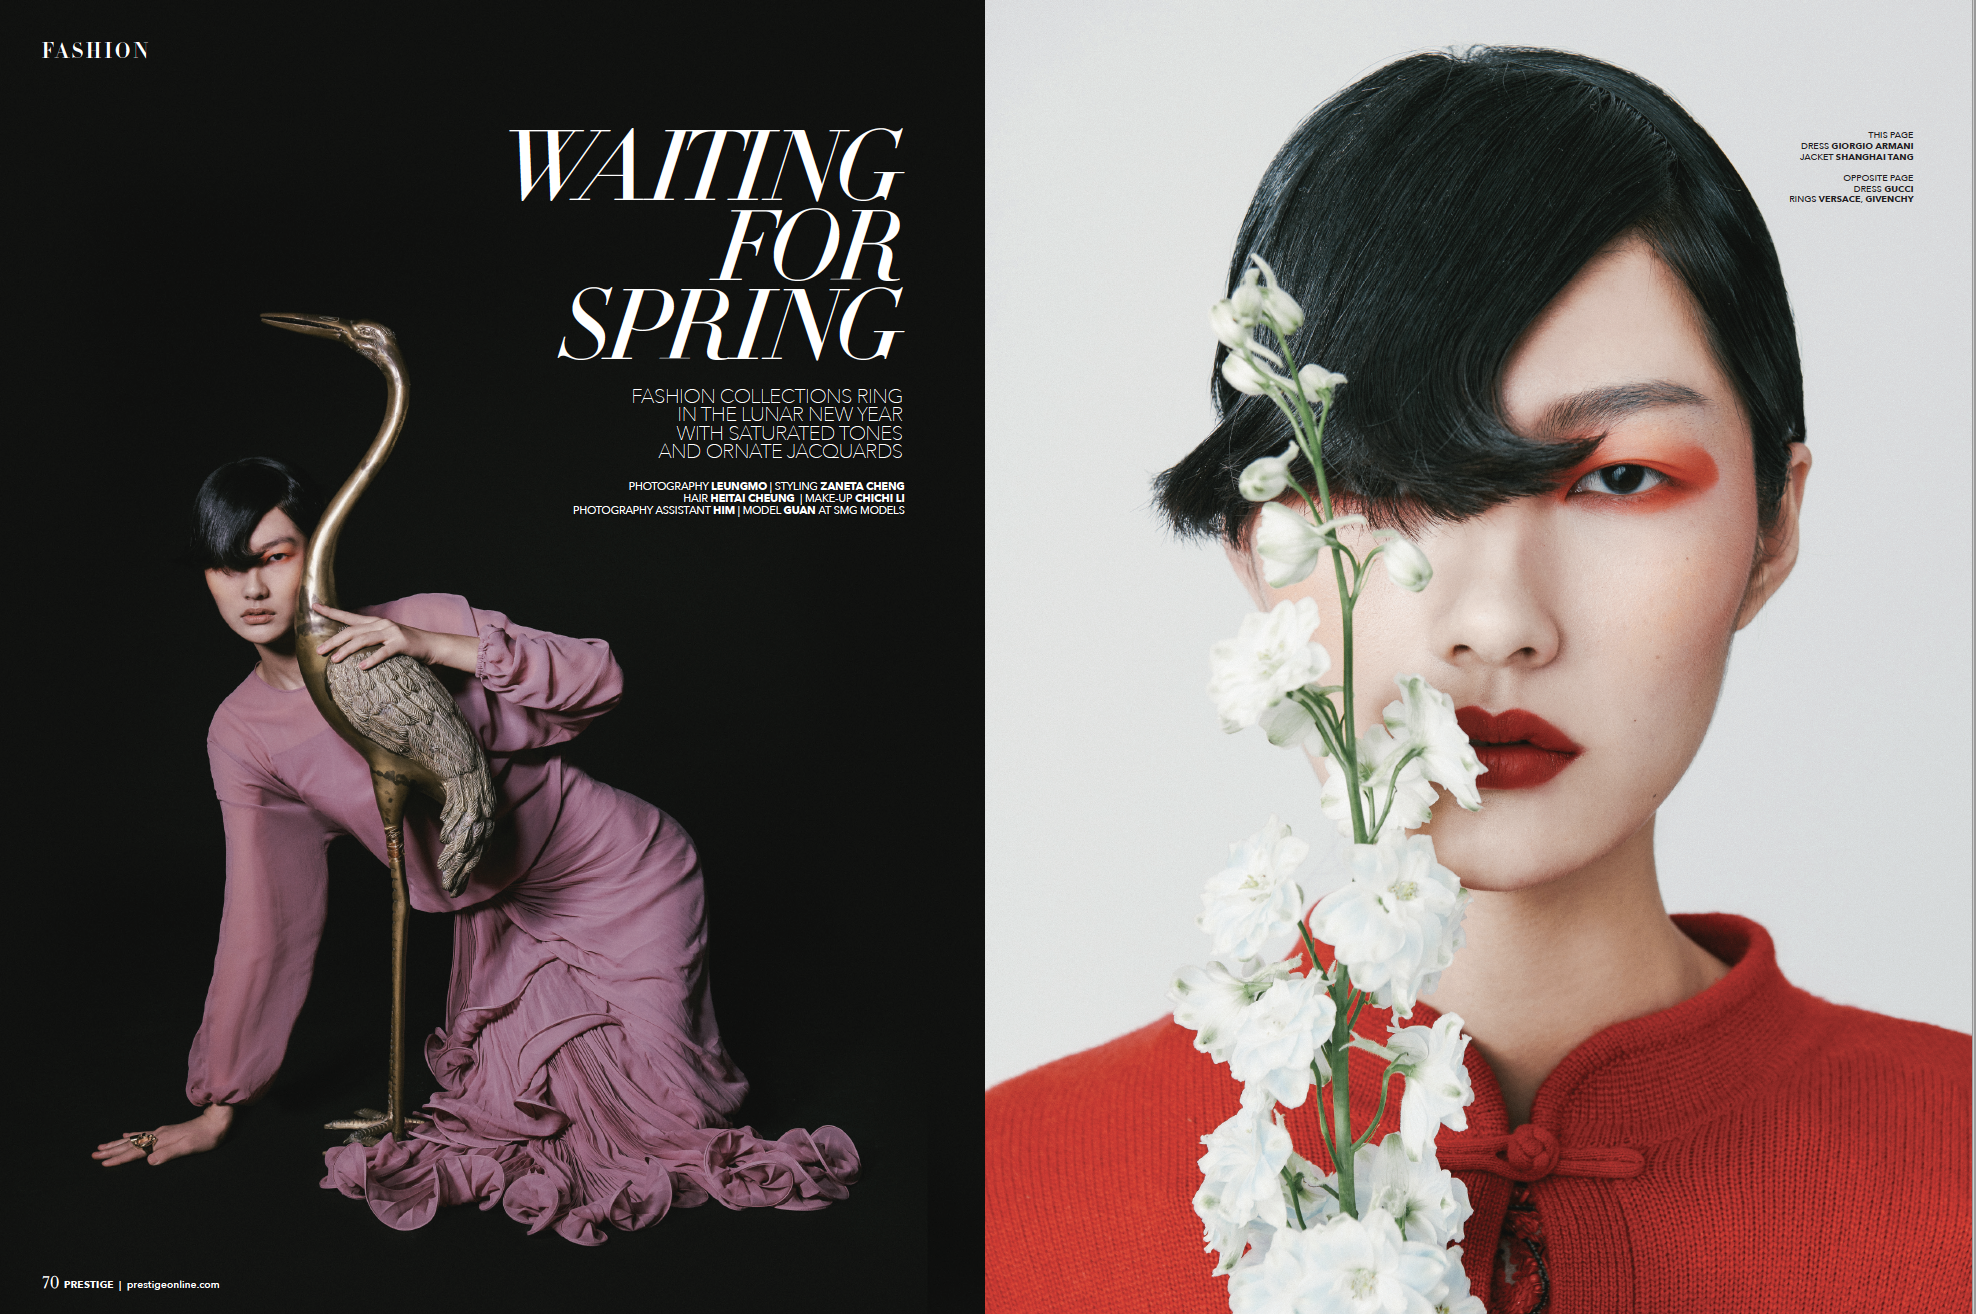 Chinese New Year Fashion Editorial Prestige Hong Kong Leung Mo January 2020 1.png